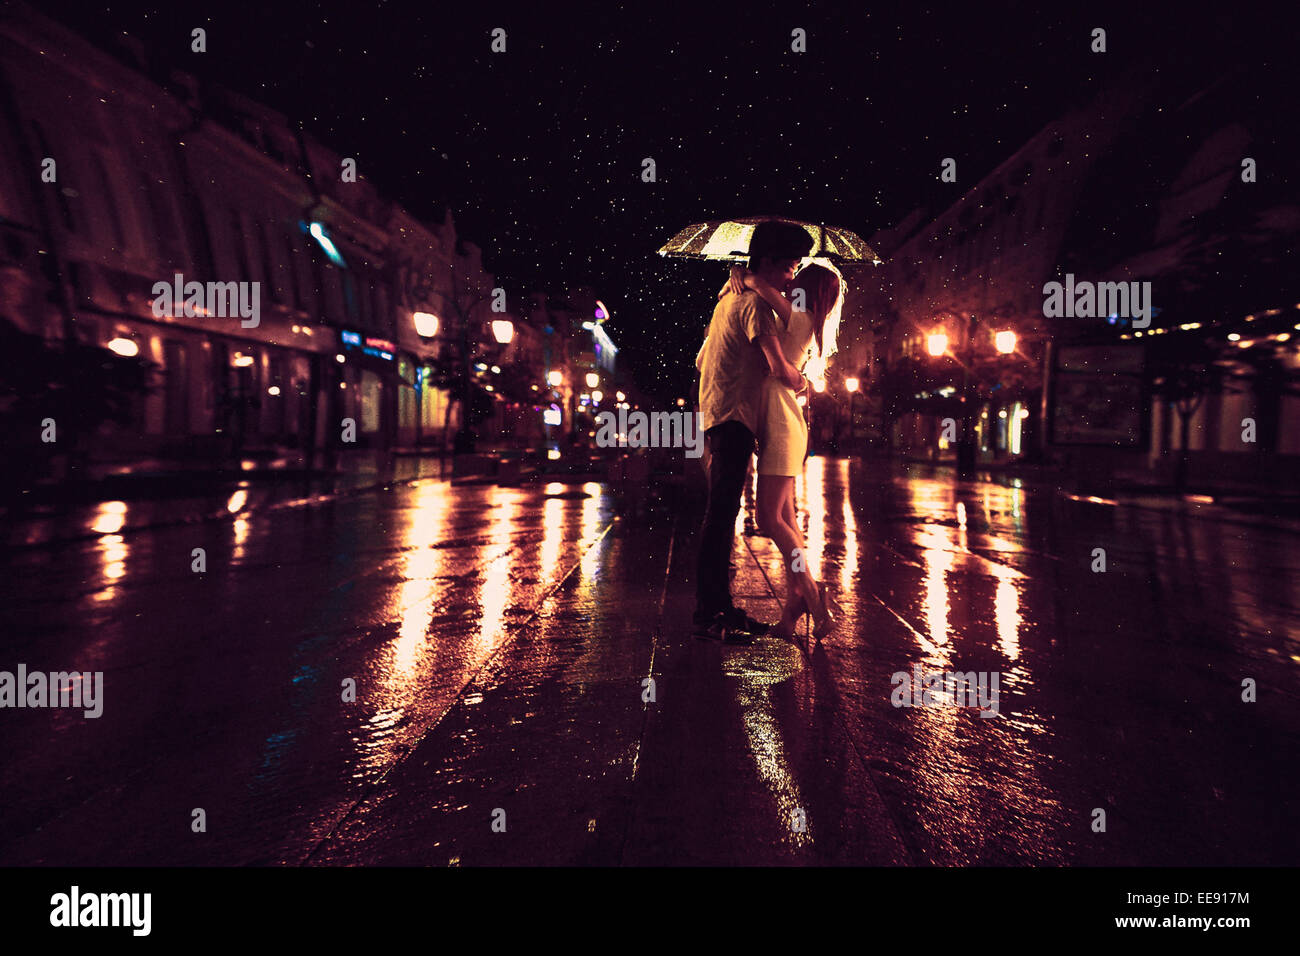 L'amour sous la pluie / Silhouette de kissing couple under umbrella Banque D'Images